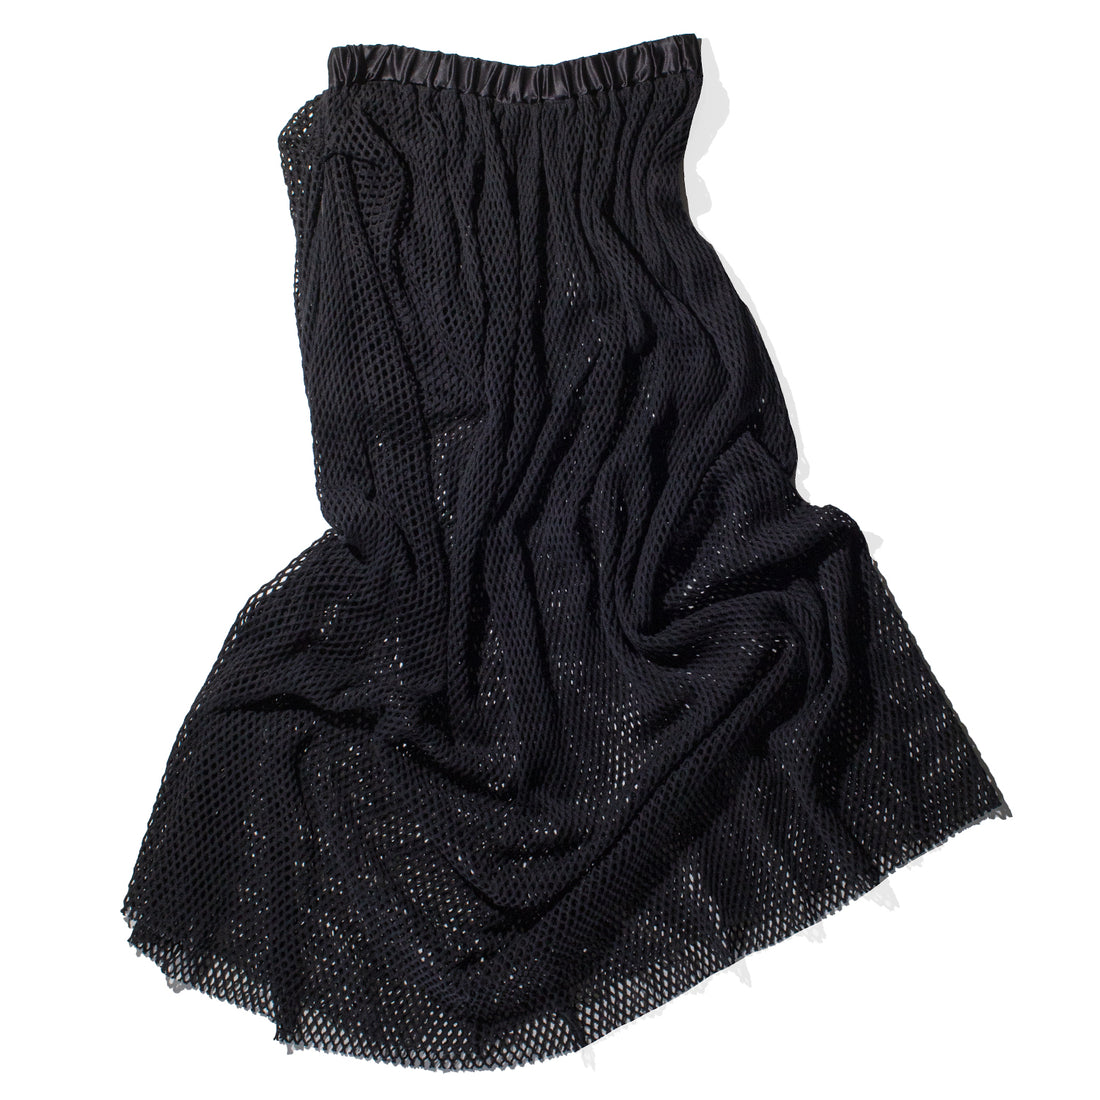 Diotima Peplos Skirt in Black Cotton Net